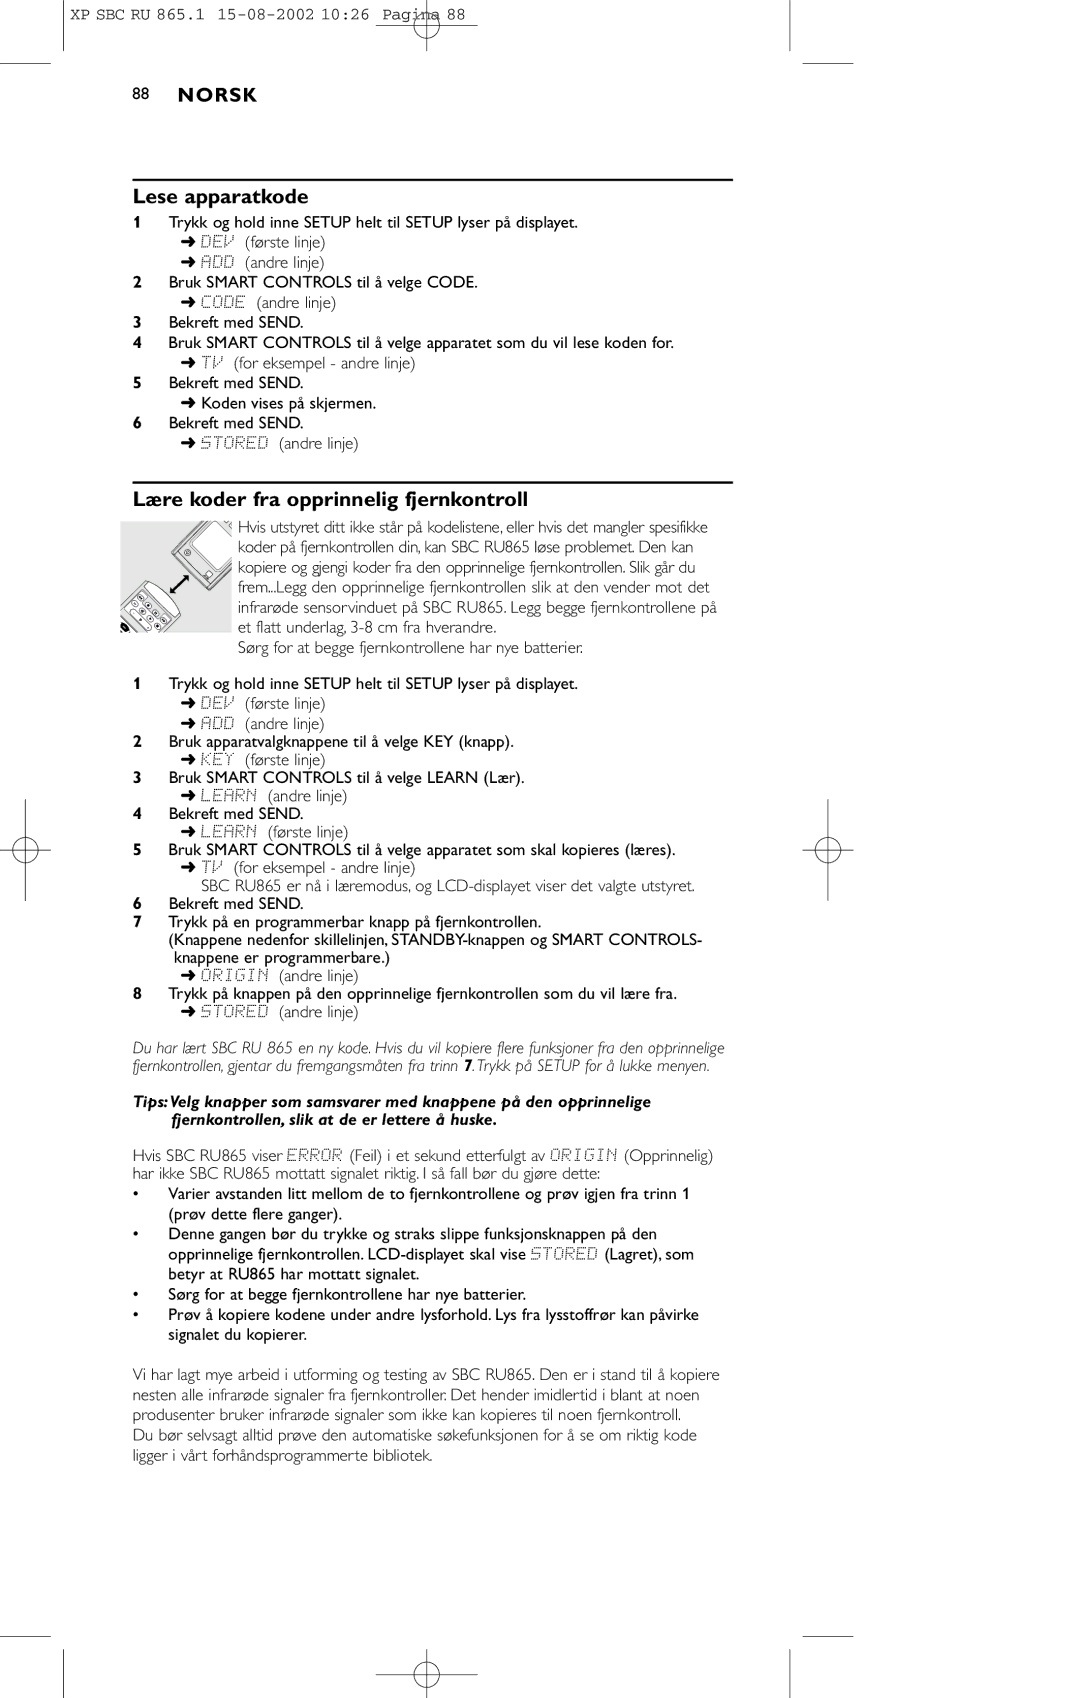 Philips SBC RU 865/00 manual Lese apparatkode, Lære koder fra opprinnelig fjernkontroll 